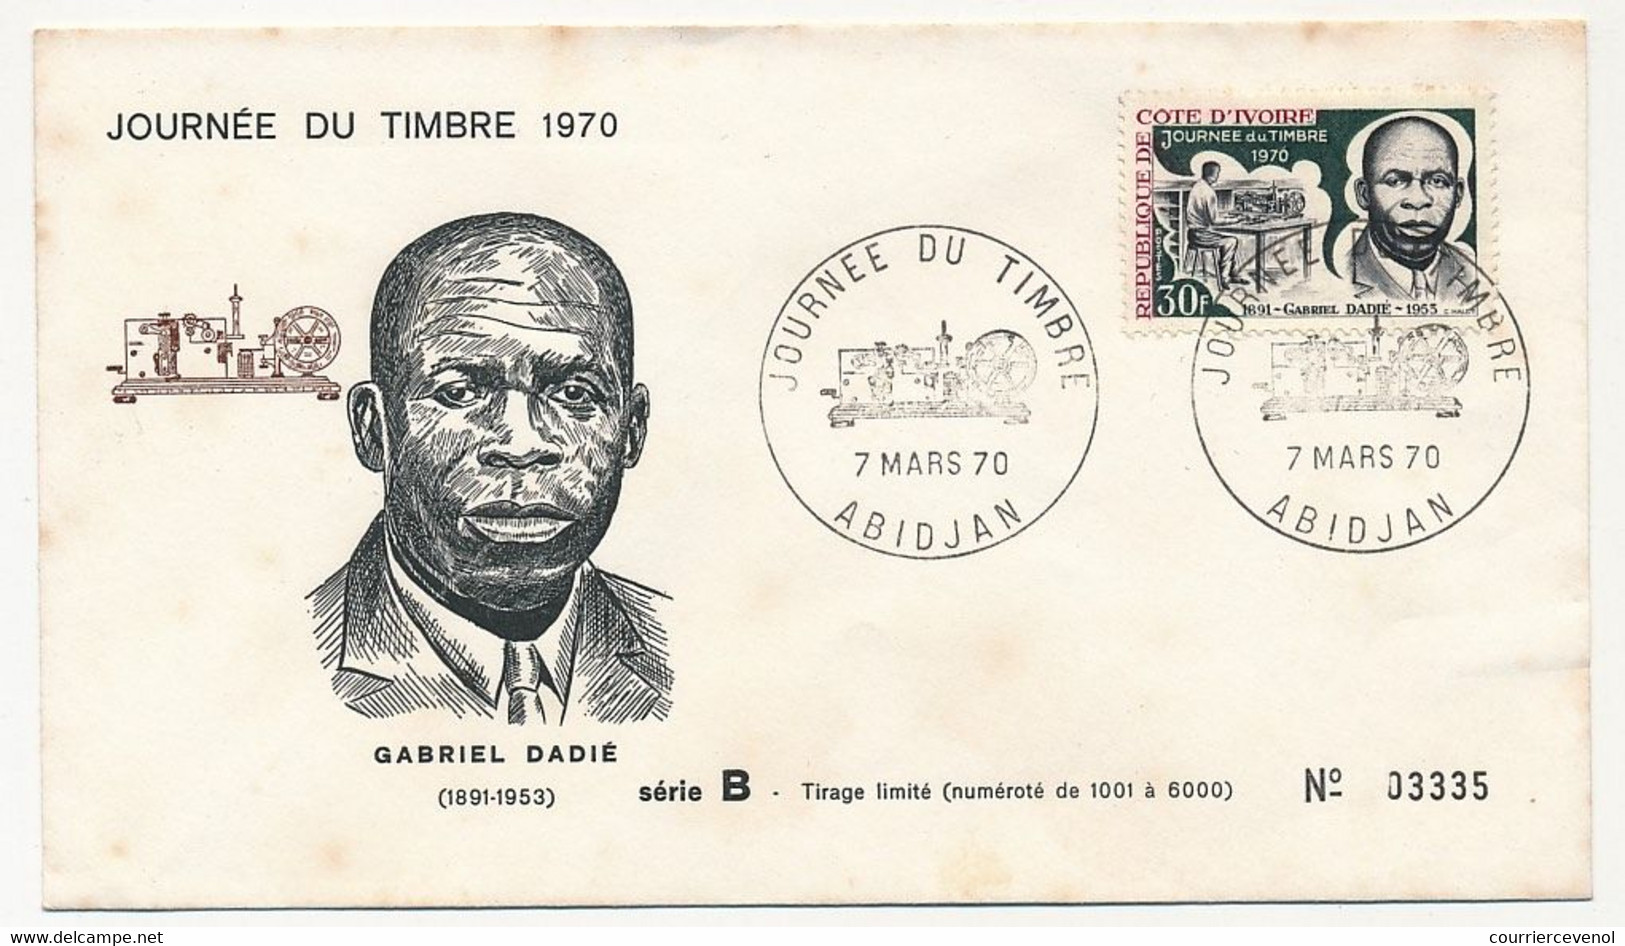 CÔTE D'IVOIRE - Env FDC - 30F Journée Du Timbre 1970 - Gabriel Dadié - 7 Mars 1970 - Abidjan - Ivory Coast (1960-...)